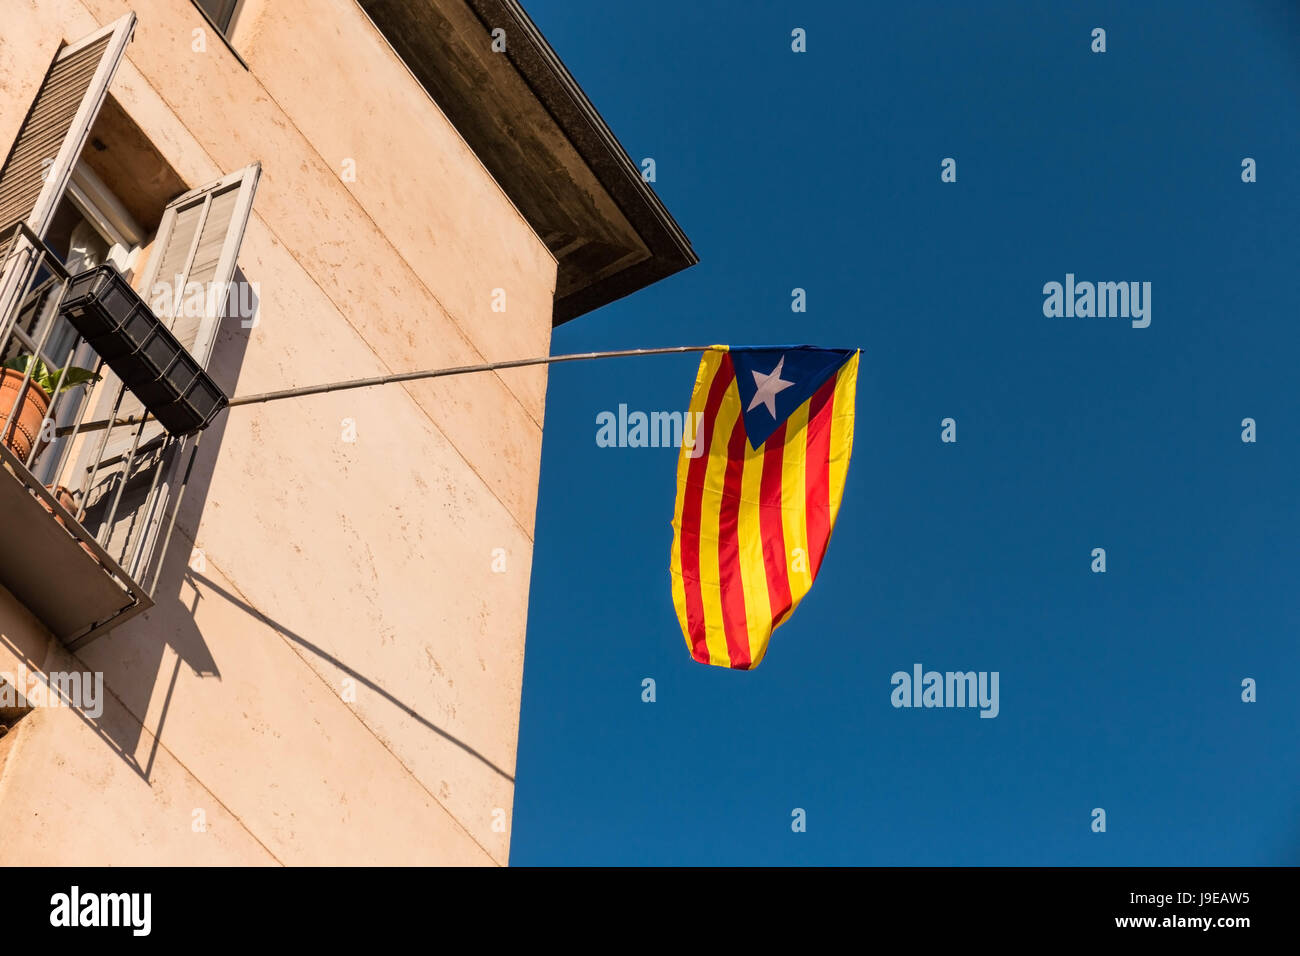 Flagge der Unabhängigkeitsbewegung von Katalonien, genannt Estelada (inoffiziell), in einer Straße in der Innenstadt von Girona, Costa Brava, Katalonien, Spanien. Stockfoto